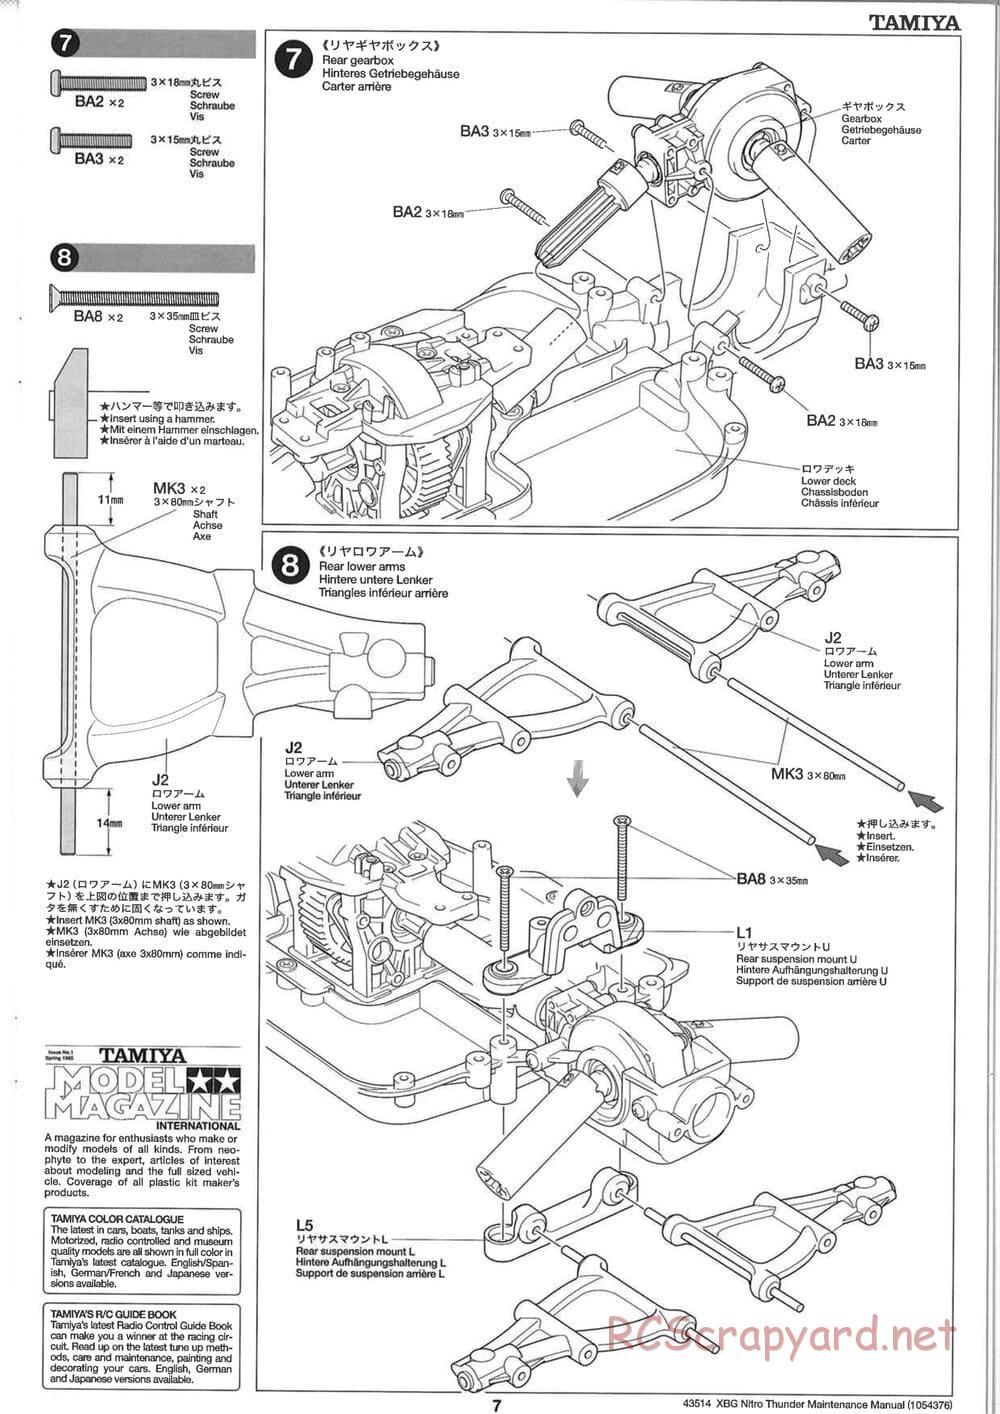 Tamiya - Nitro Thunder - NDF-01 Chassis - Manual - Page 7